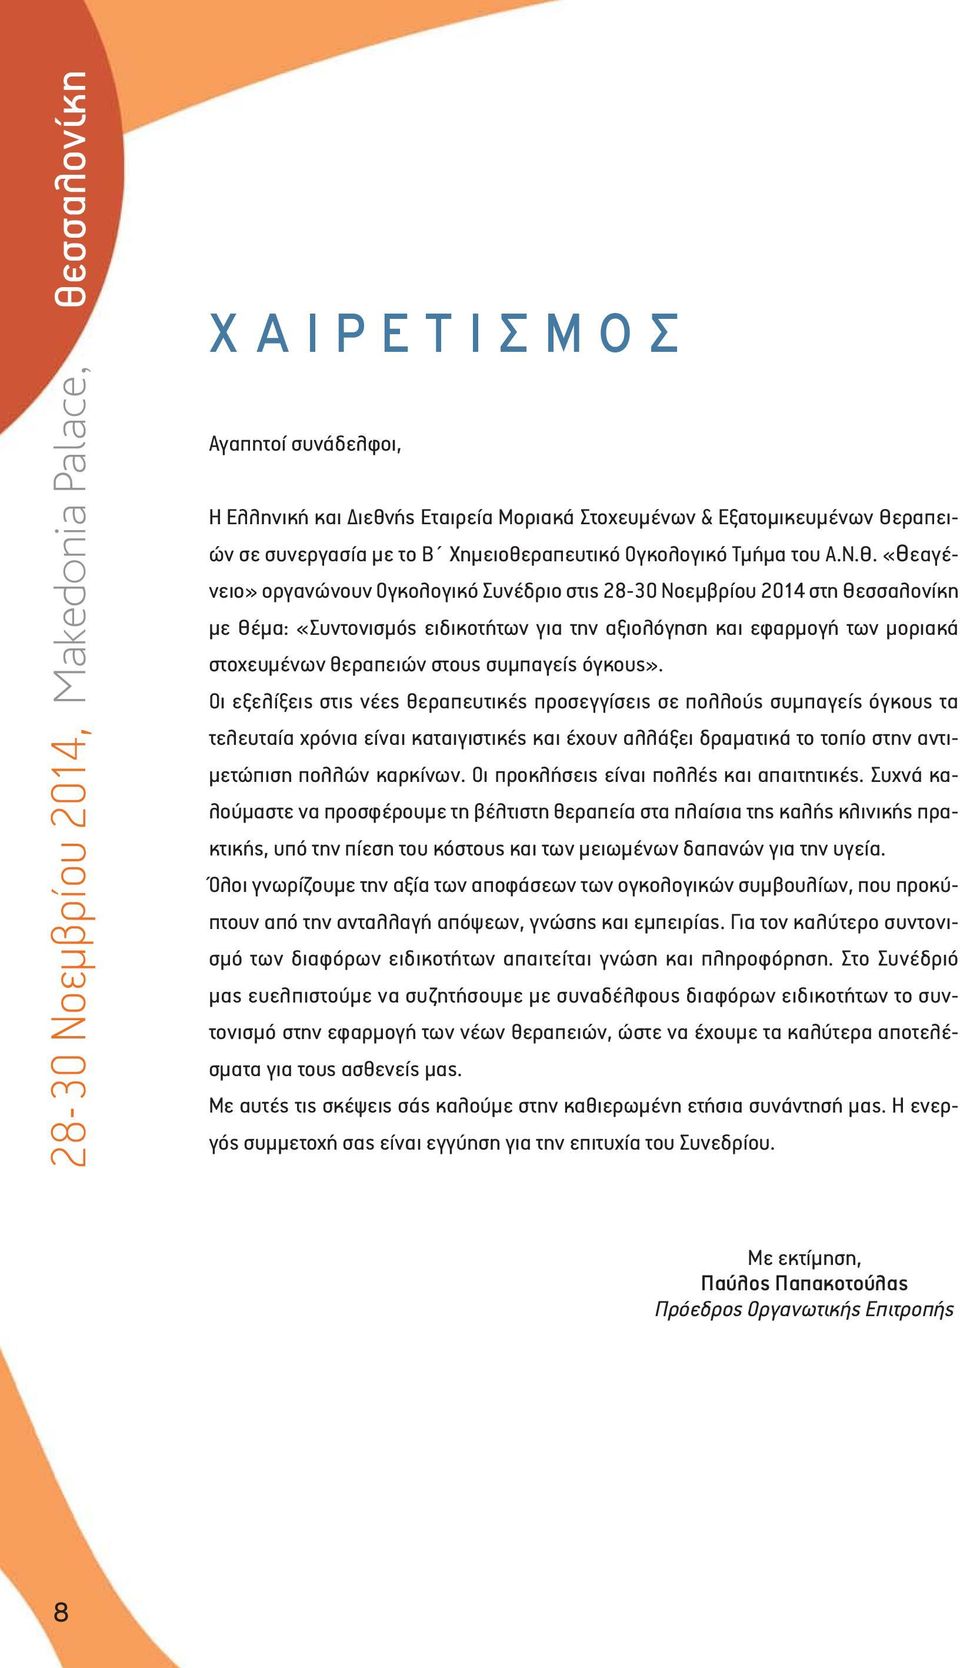 «Θεαγένειο» οργανώνουν Ογκολογικό Συνέδριο στις 28-30 Νοεμβρίου 2014 στη Θεσσαλονίκη με Θέμα: «Συντονισμός ειδικοτήτων για την αξιολόγηση και εφαρμογή των μοριακά στοχευμένων θεραπειών στους